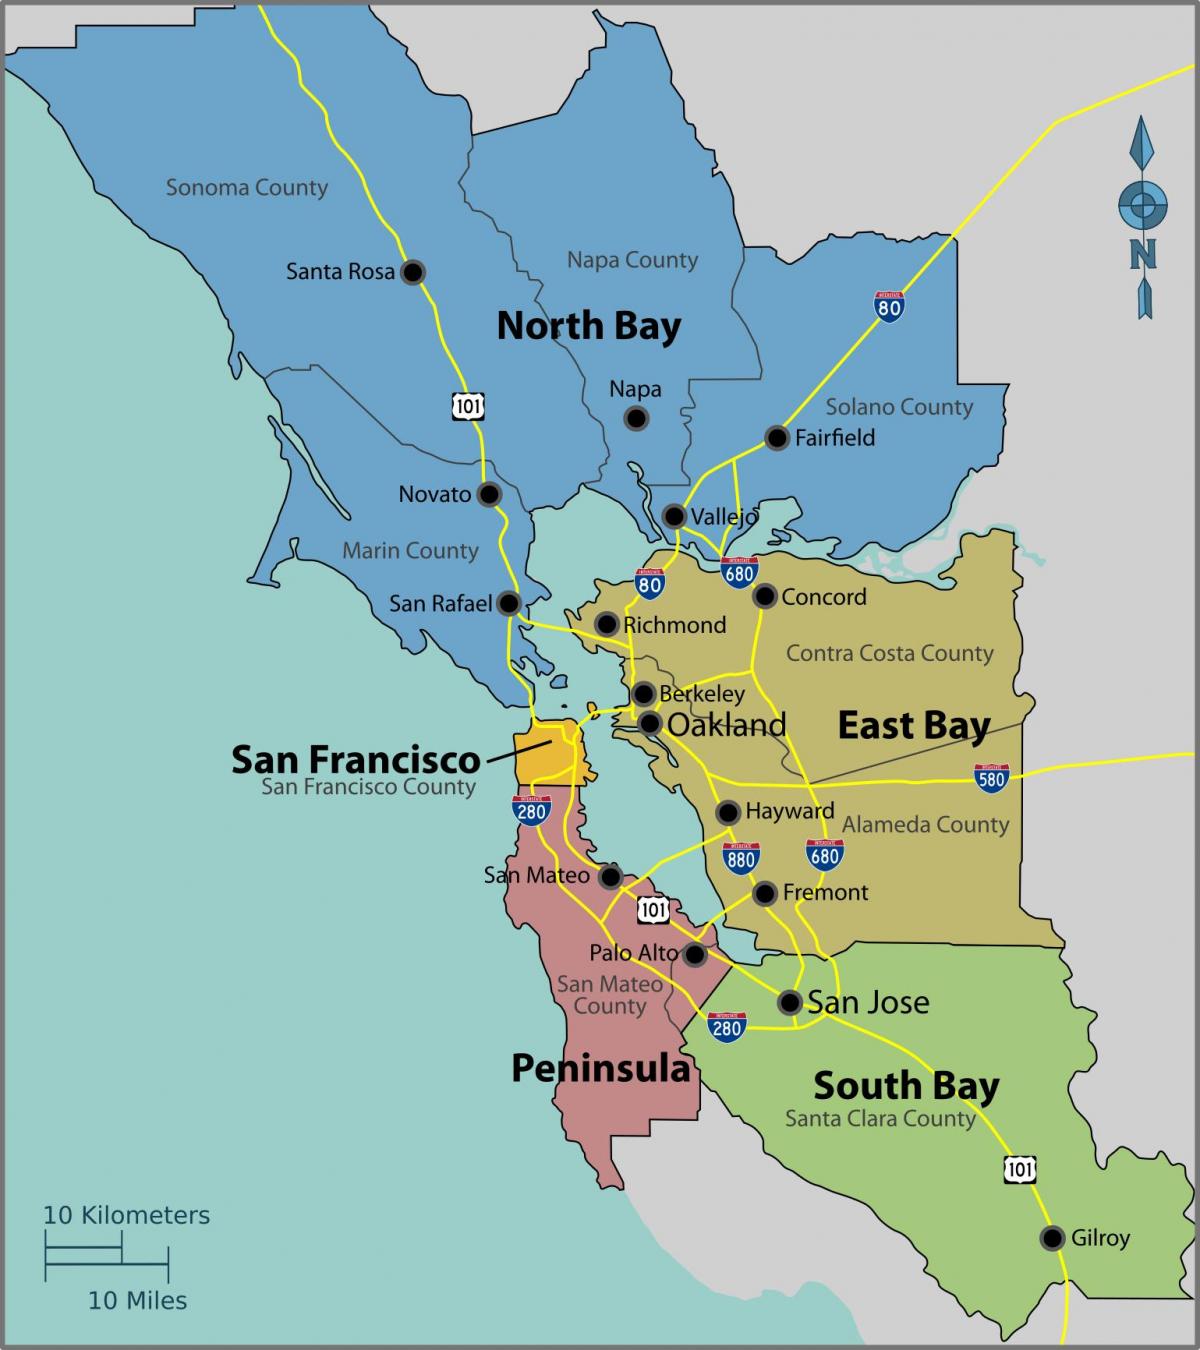 San Francisco bay en un mapa